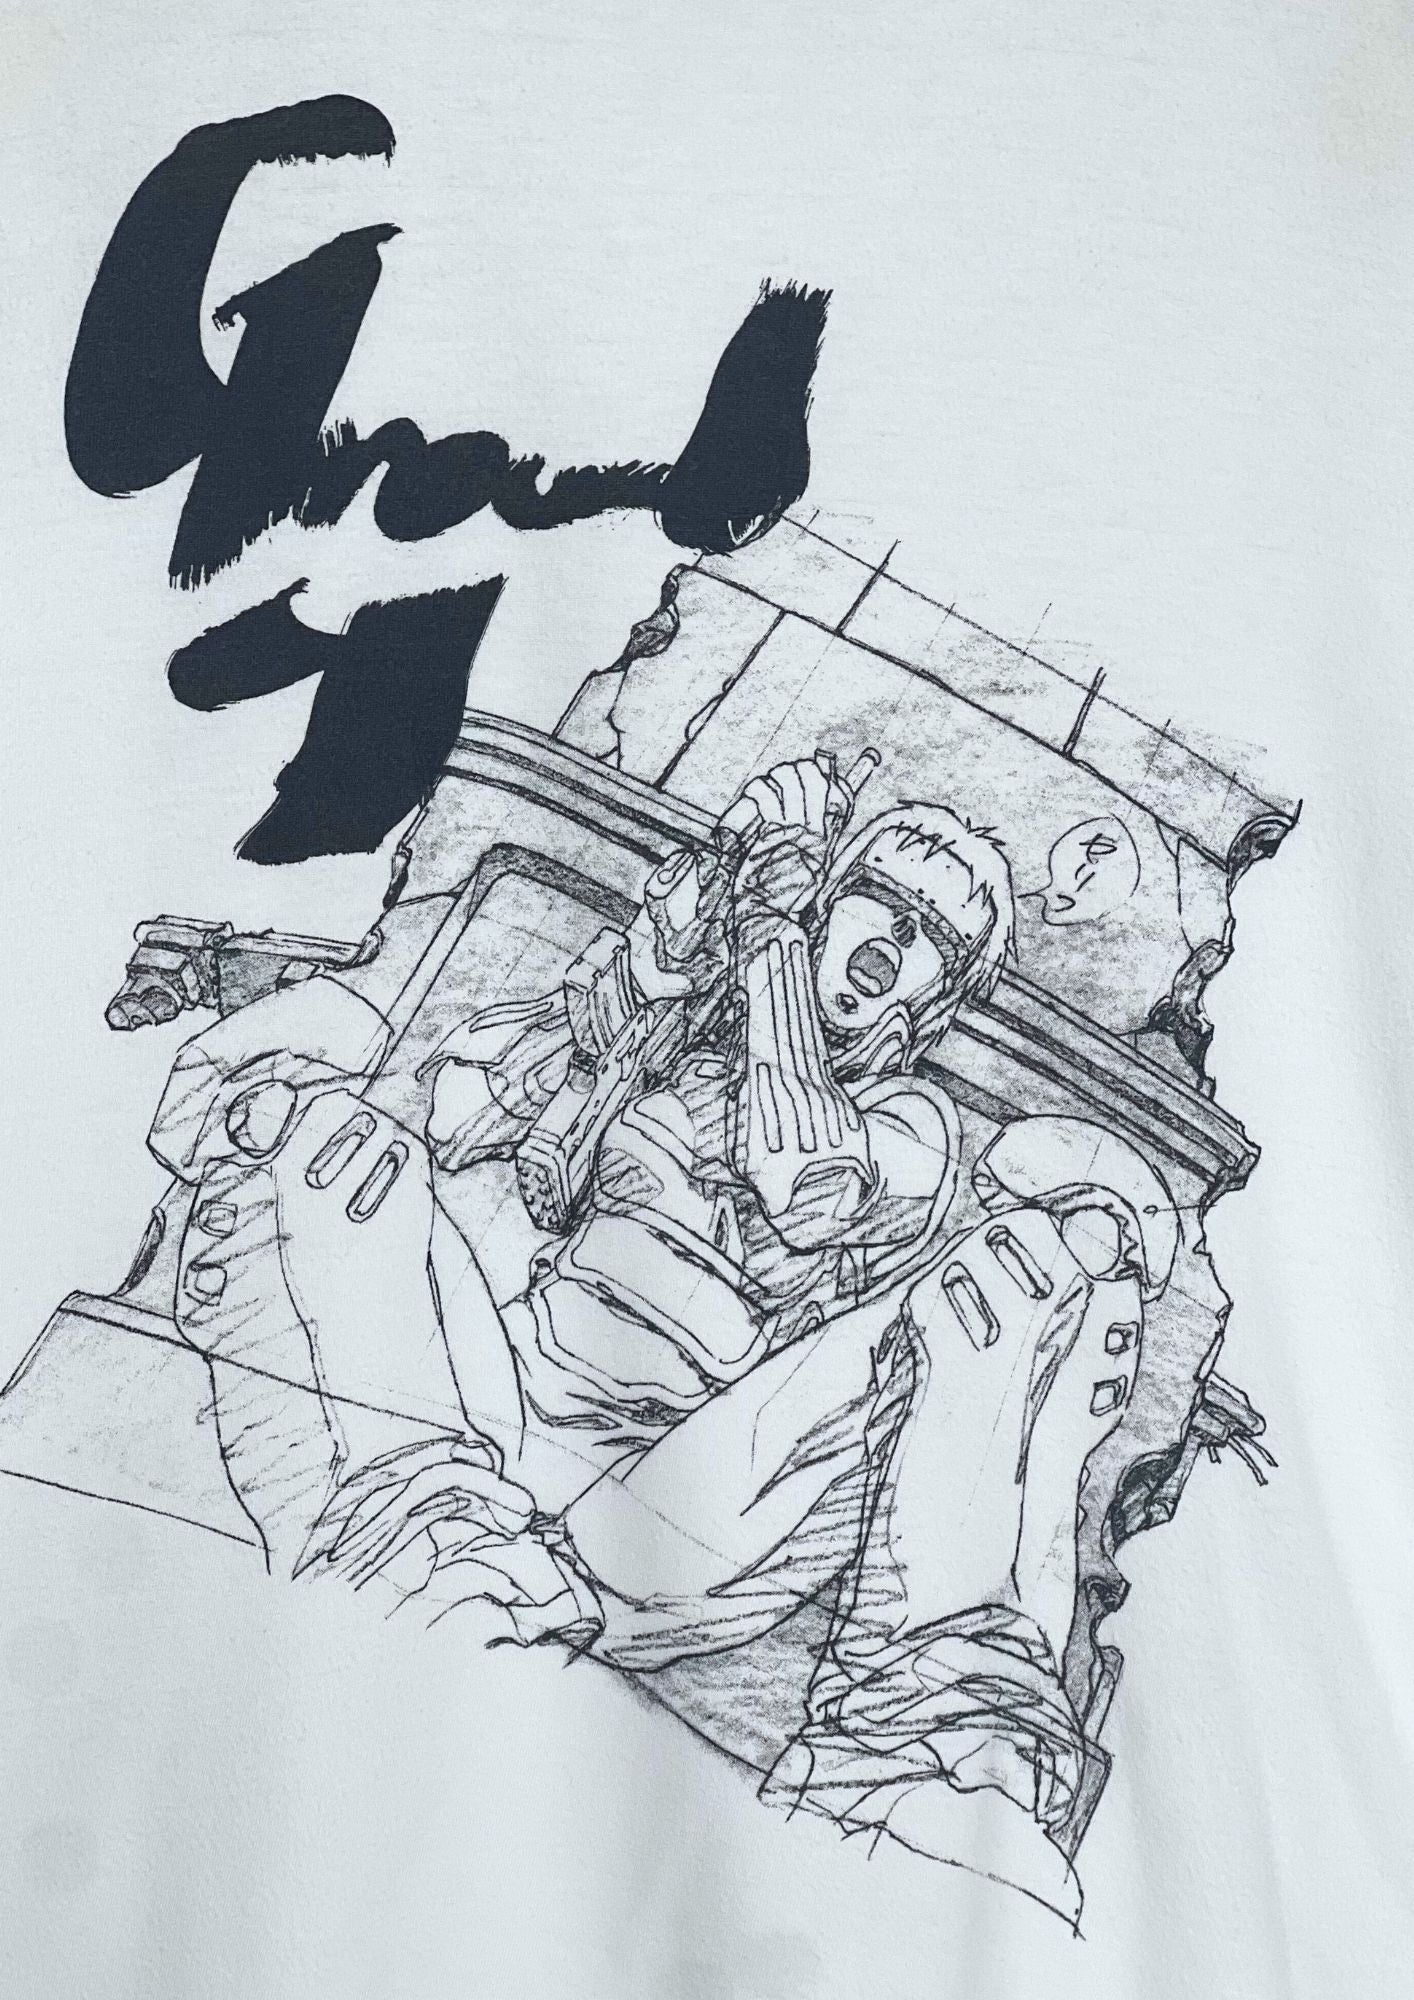 2018 Ghost in the Shell x Ground Y Yohji Yamamoto Motoko Kusanagi Genga T-shirt